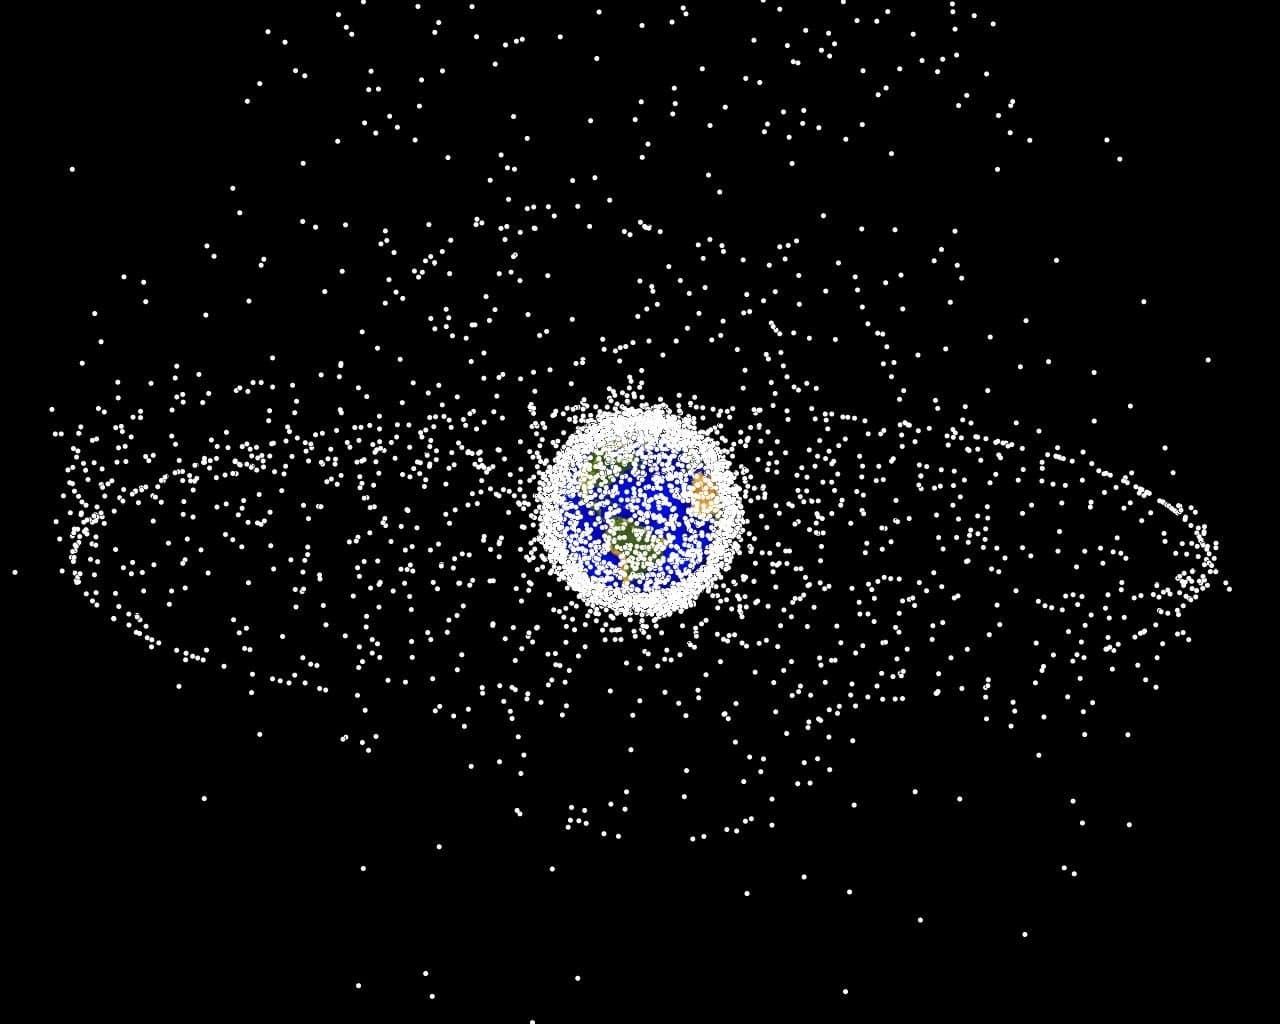 Schéma représentant les débris spatiaux autour de la Terre.